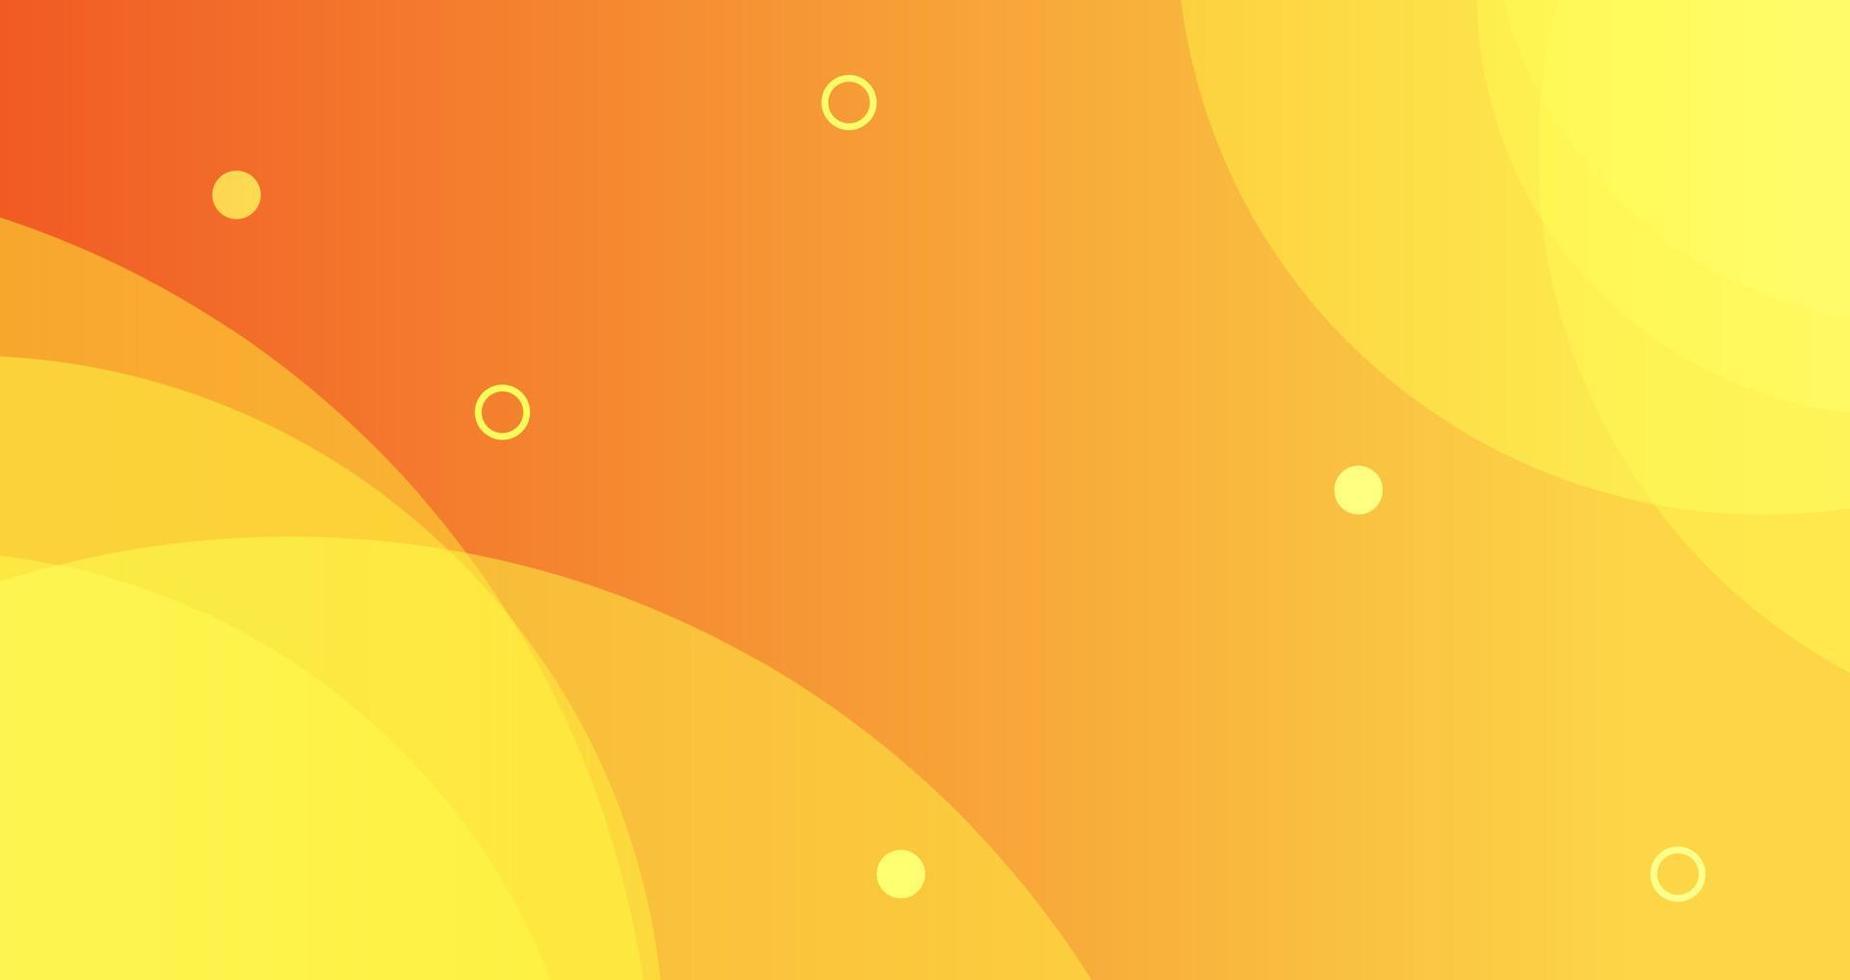 forma abstracta geométrica sobre fondo de superposición de degradado amarillo-naranja. vector. vector